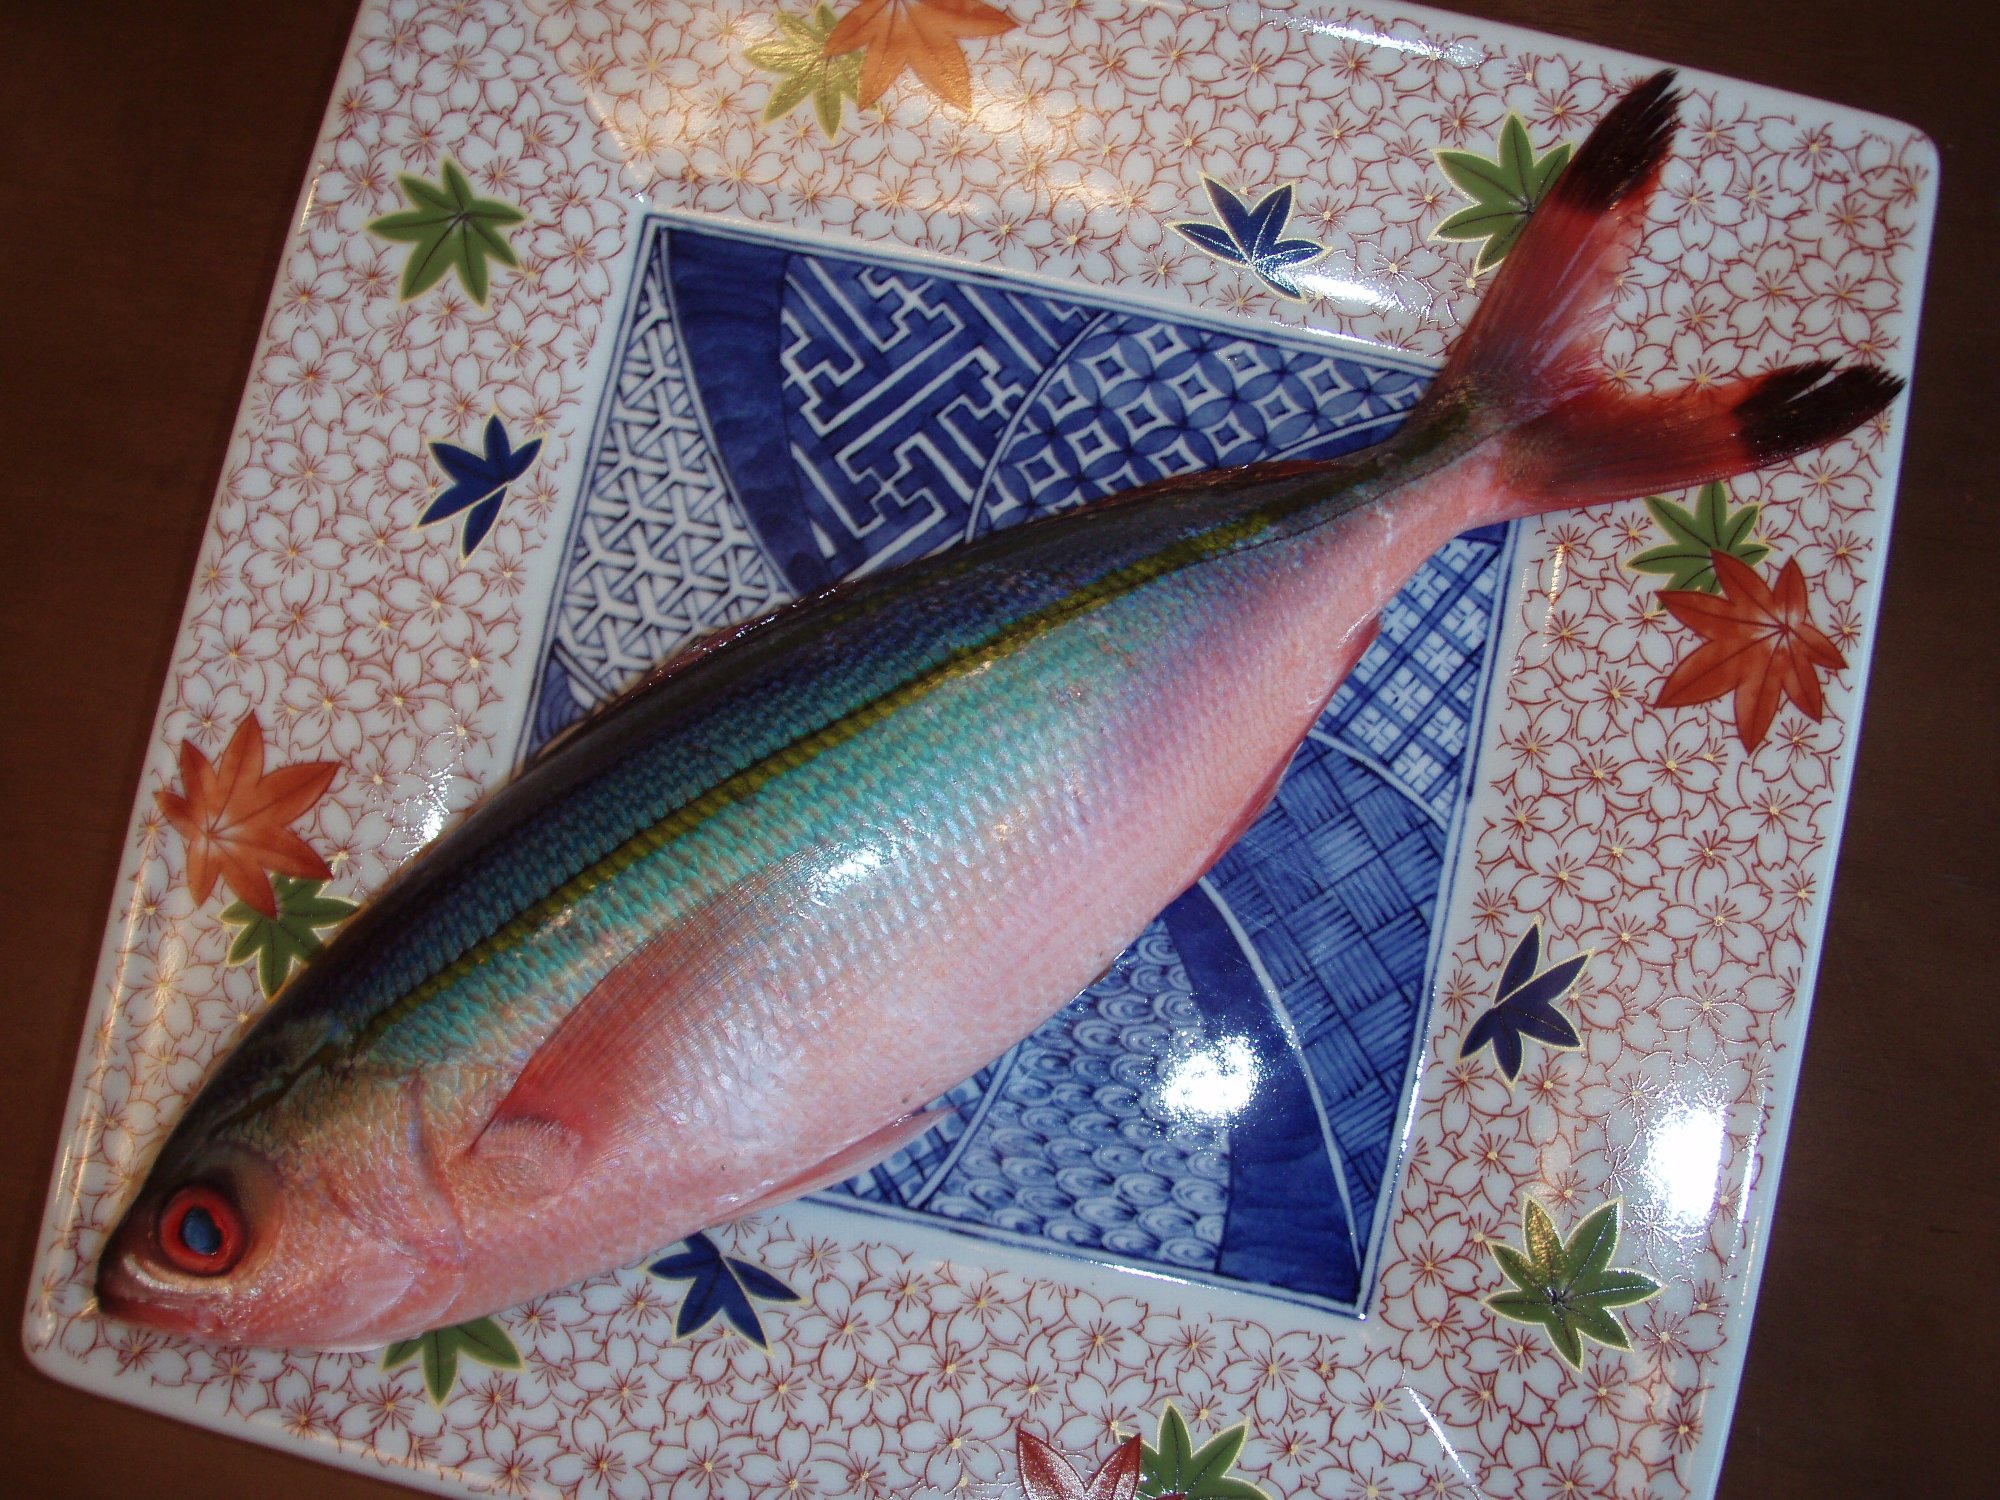 串本では珍しい魚で 花ムロ と呼ばれ 沖縄ではポピュラーな県魚 グルクン タカサゴ と呼ばれる魚の画像である 今日は知り合いの方からメジロを頂きその造りをおまけとしてお客様に提供する 椿道旅館だより